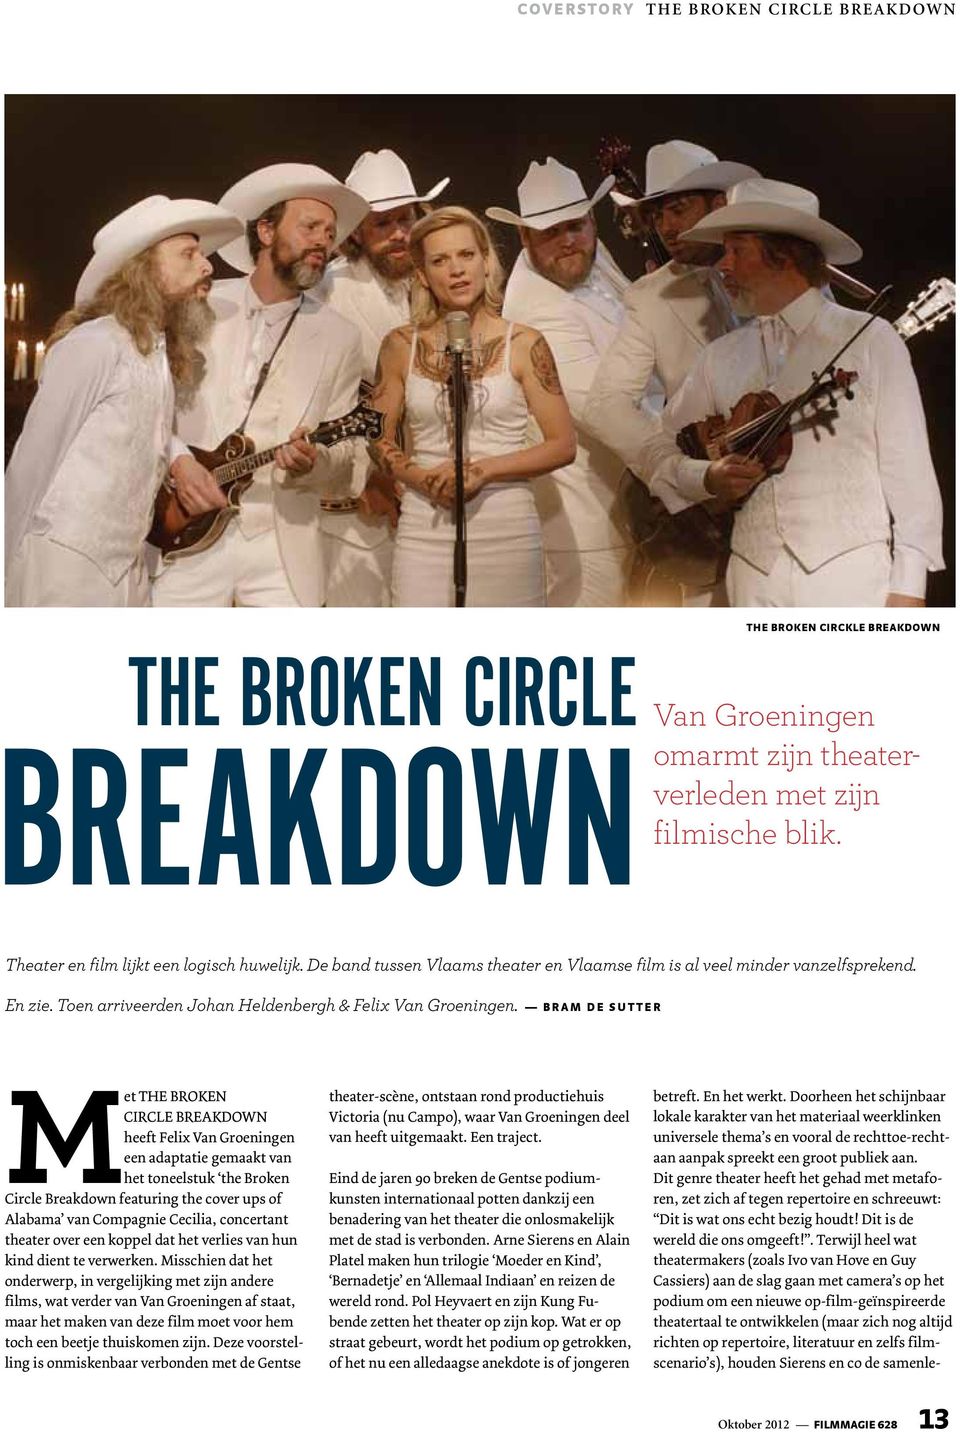 BRAM DE SUTTER Met The Broken Circle Breakdown heeft Felix Van Groeningen een adaptatie gemaakt van het toneelstuk the Broken Circle Breakdown featuring the cover ups of Alabama van Compagnie